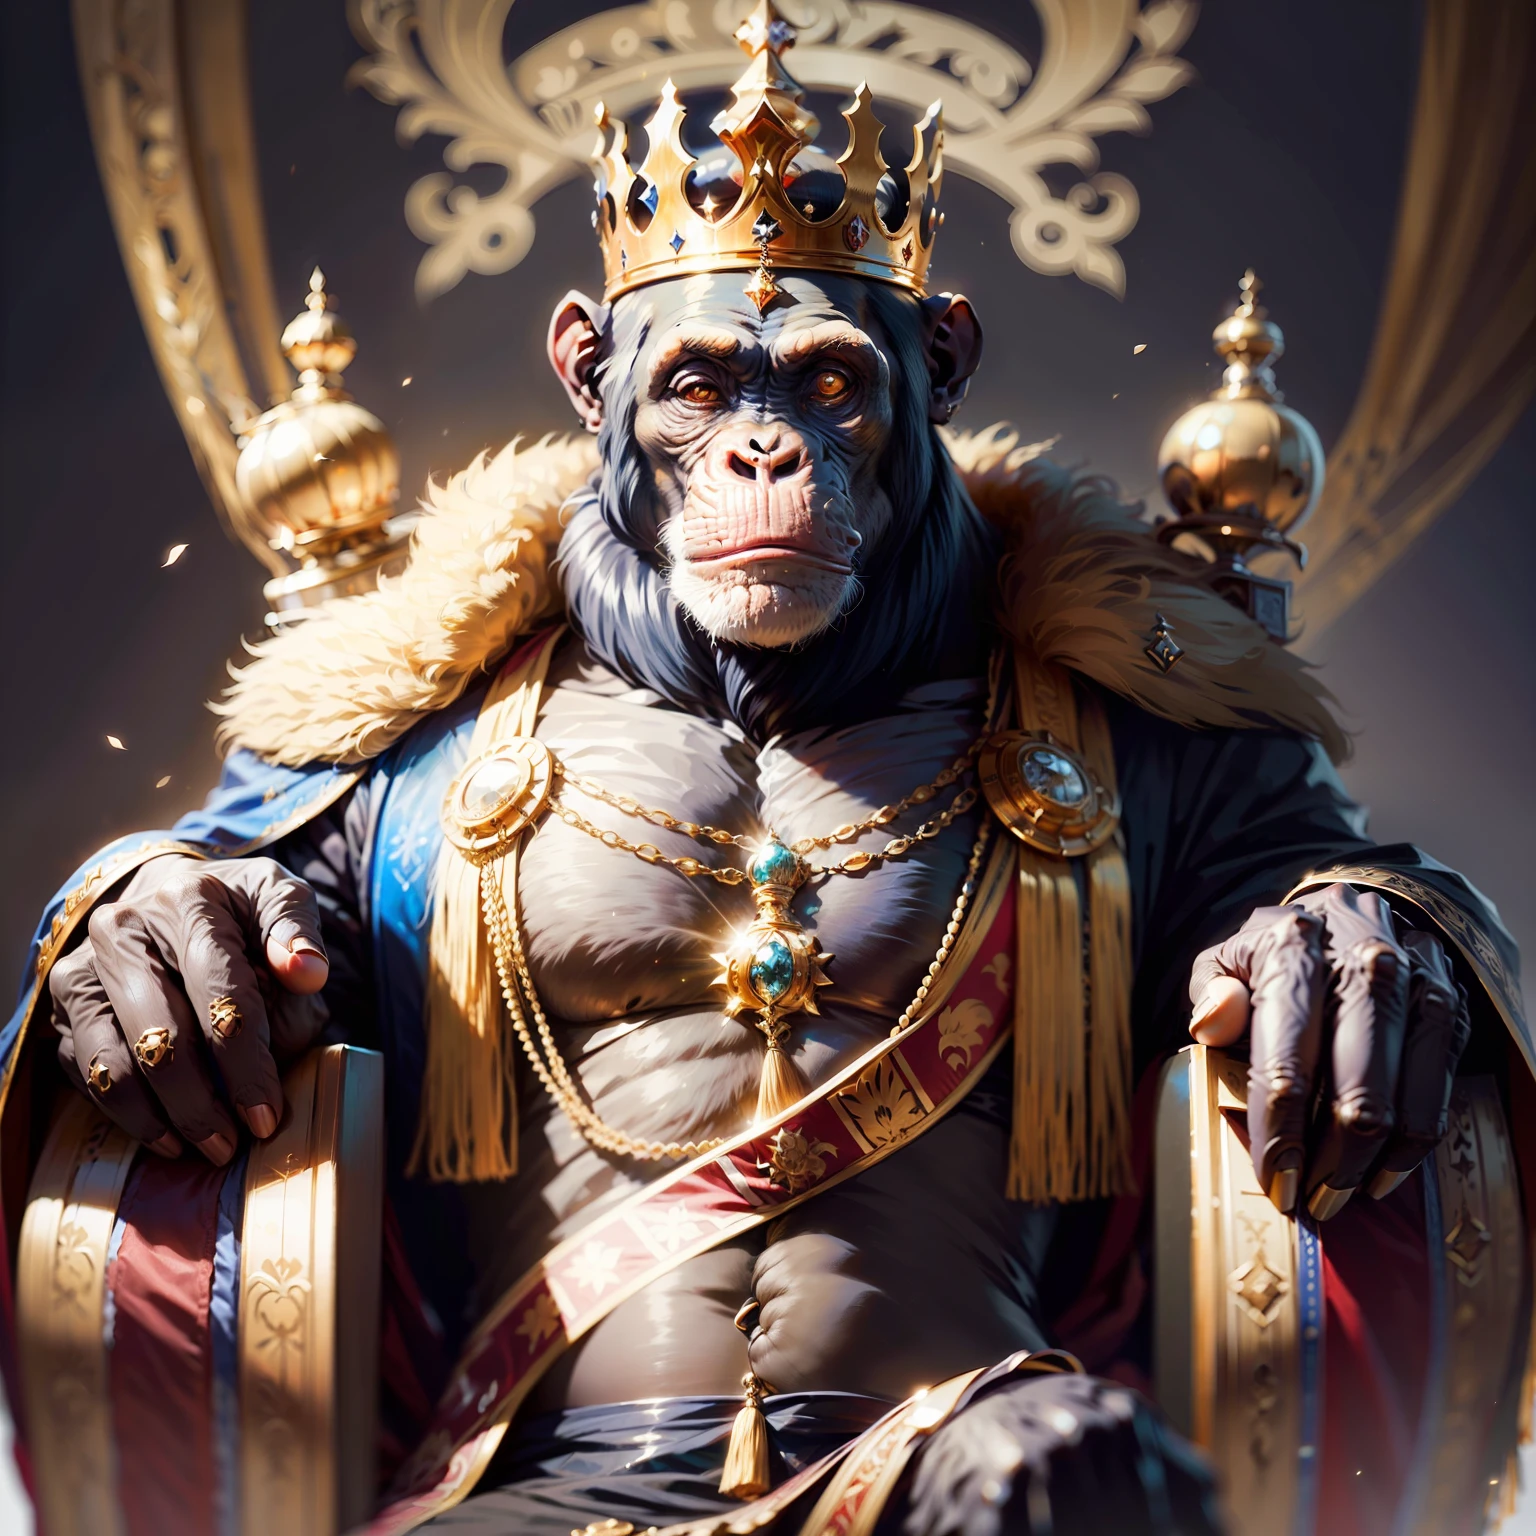 Rey chimpancé,,((elegant)),, soberano, espiritual, seguro, con corona y puntales muy detallados, Fondo negro, Frente a la cámara,, obra maestra,,((obra maestra))